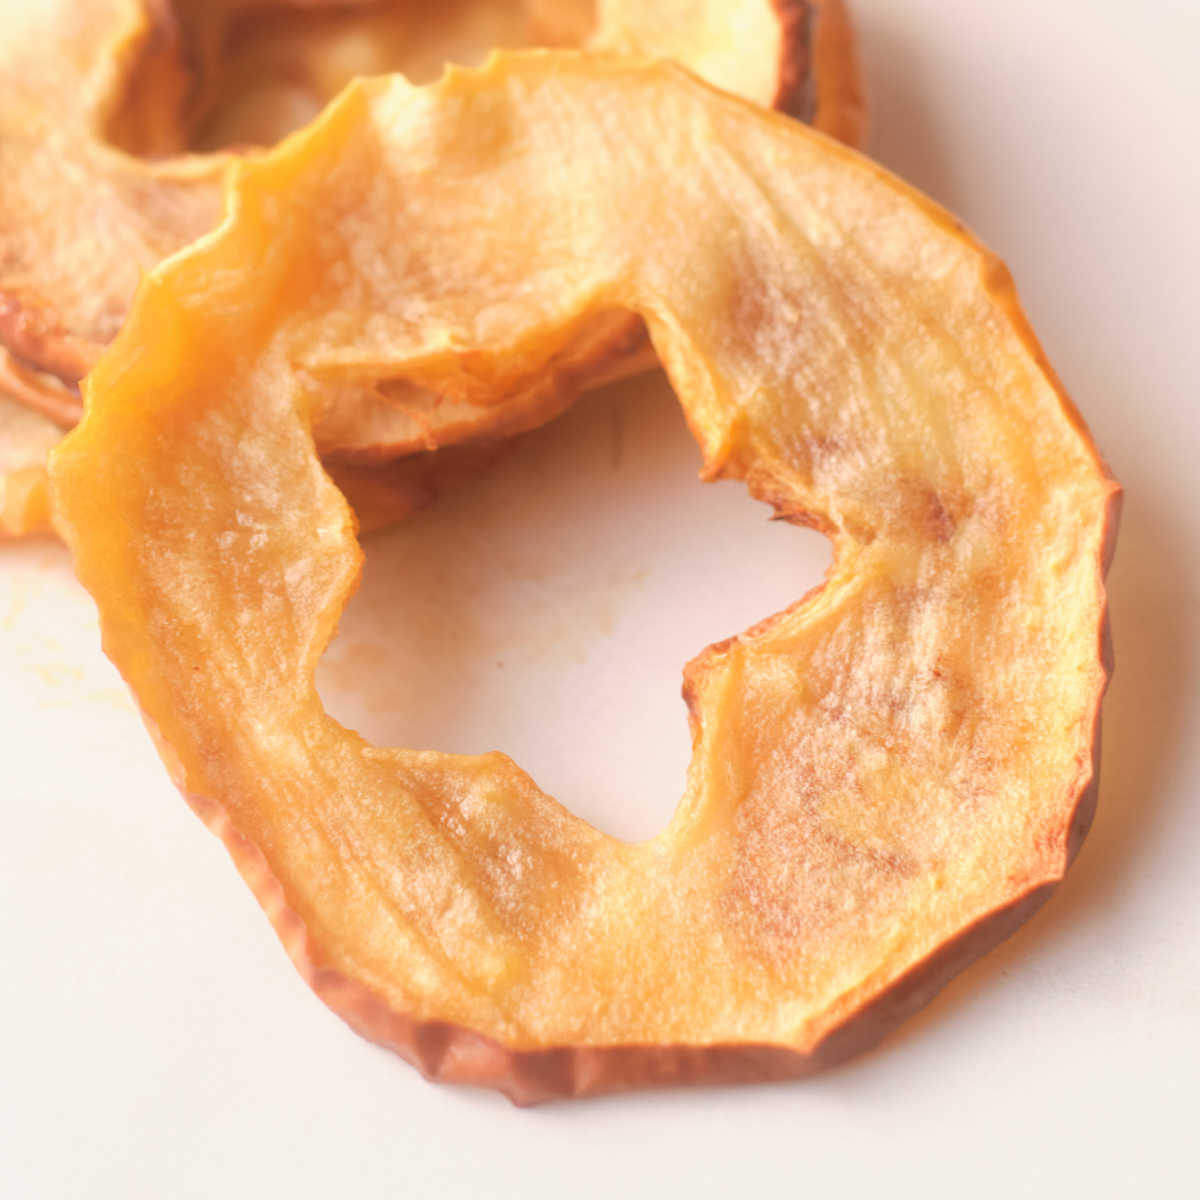 baked apple star slice